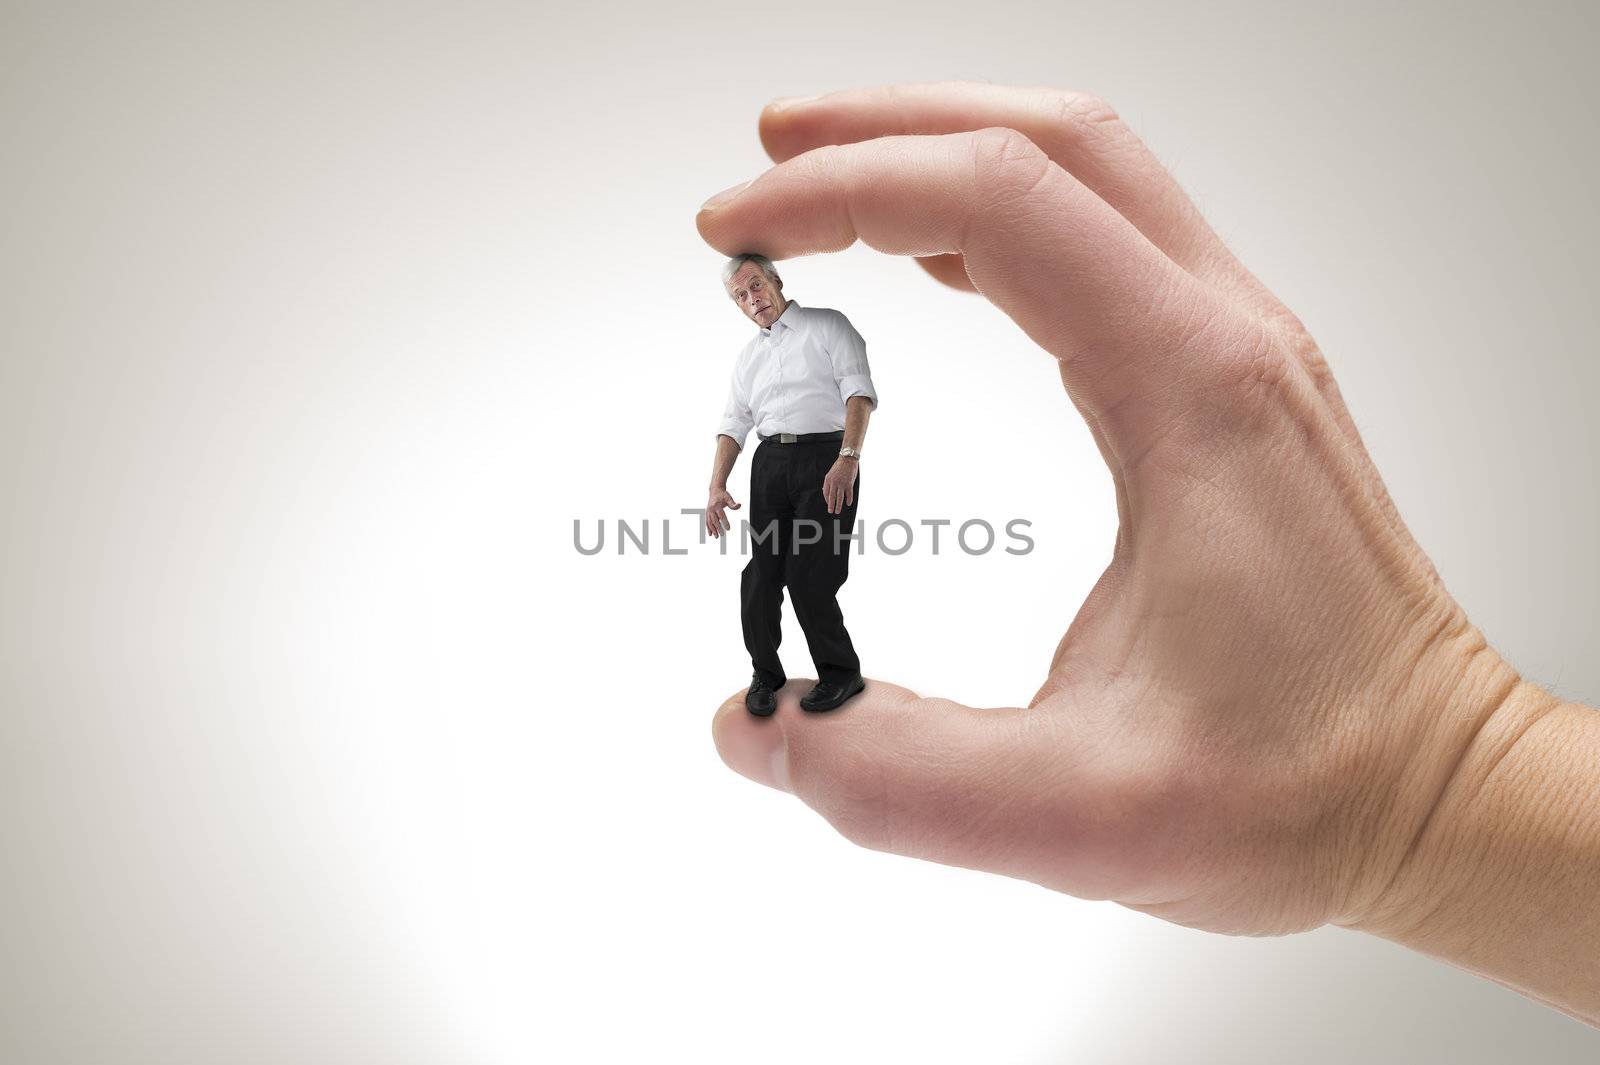 Conceptual creative shot of a man between fingers.